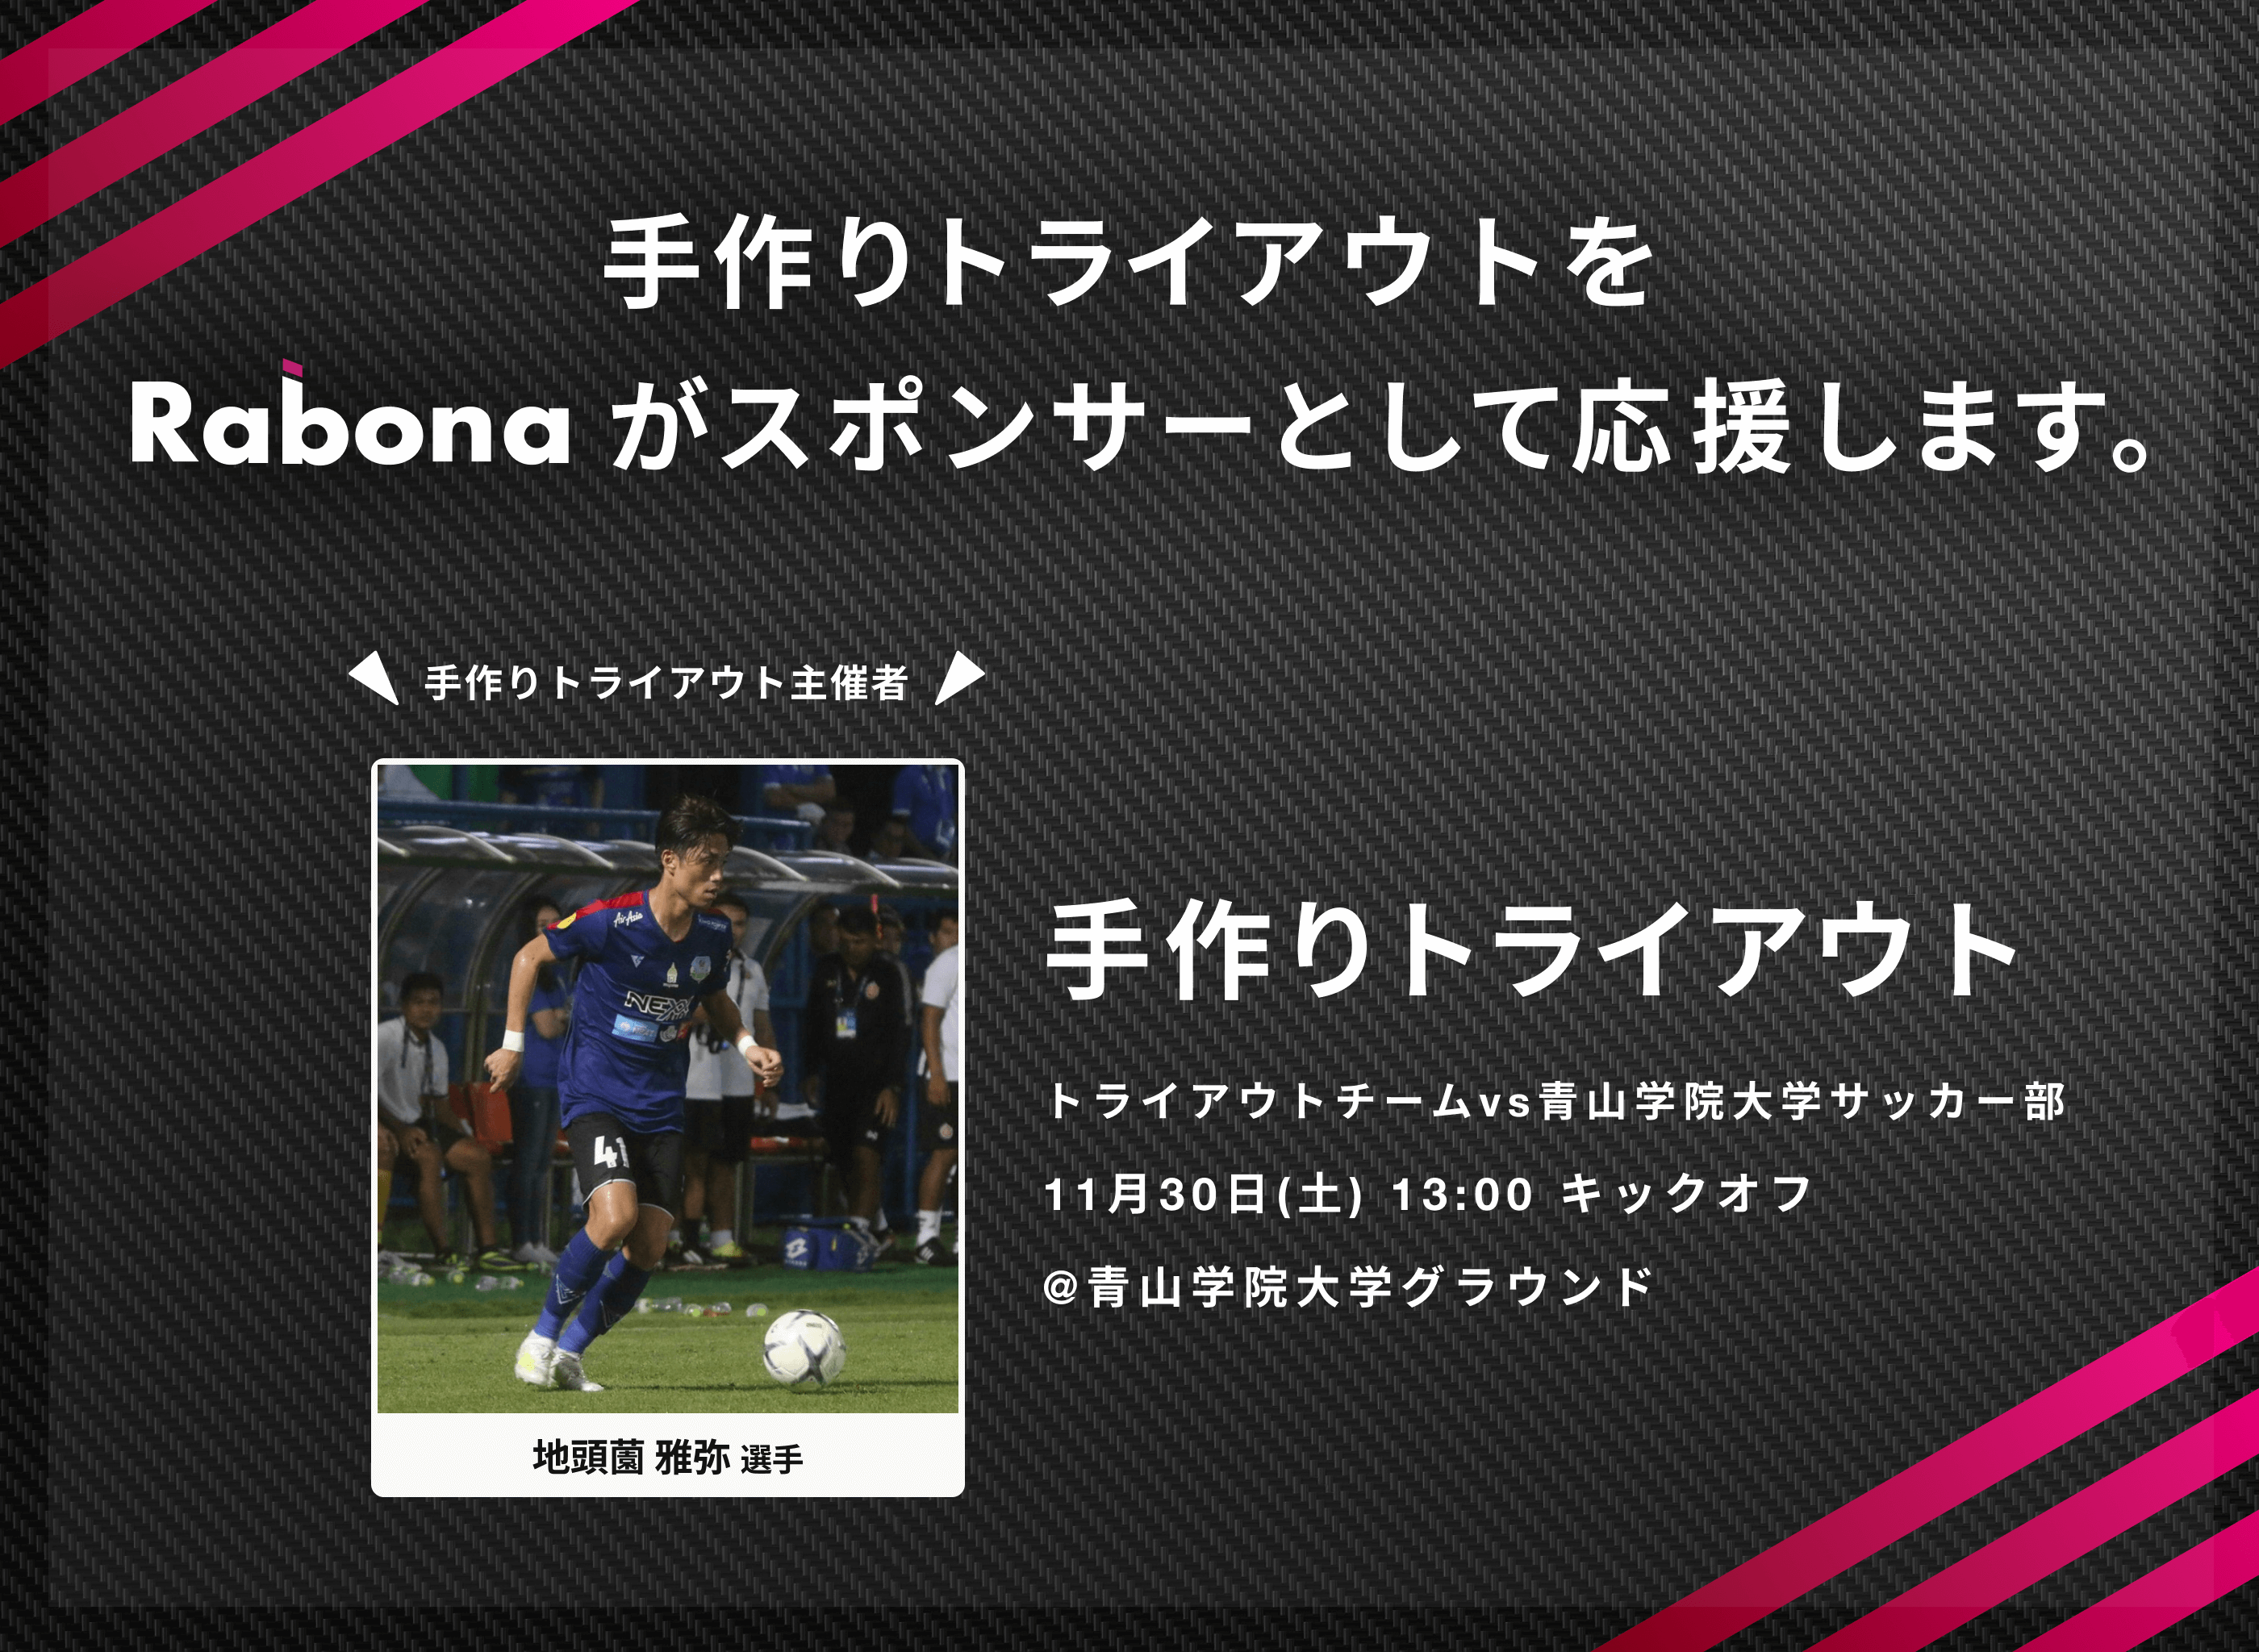 海外で活躍する日本人サッカー選手達が集結する 手作りトライアウト へ Rabona がメインスポンサーとして協賛 Sports Crown Pte Ltd のプレスリリース